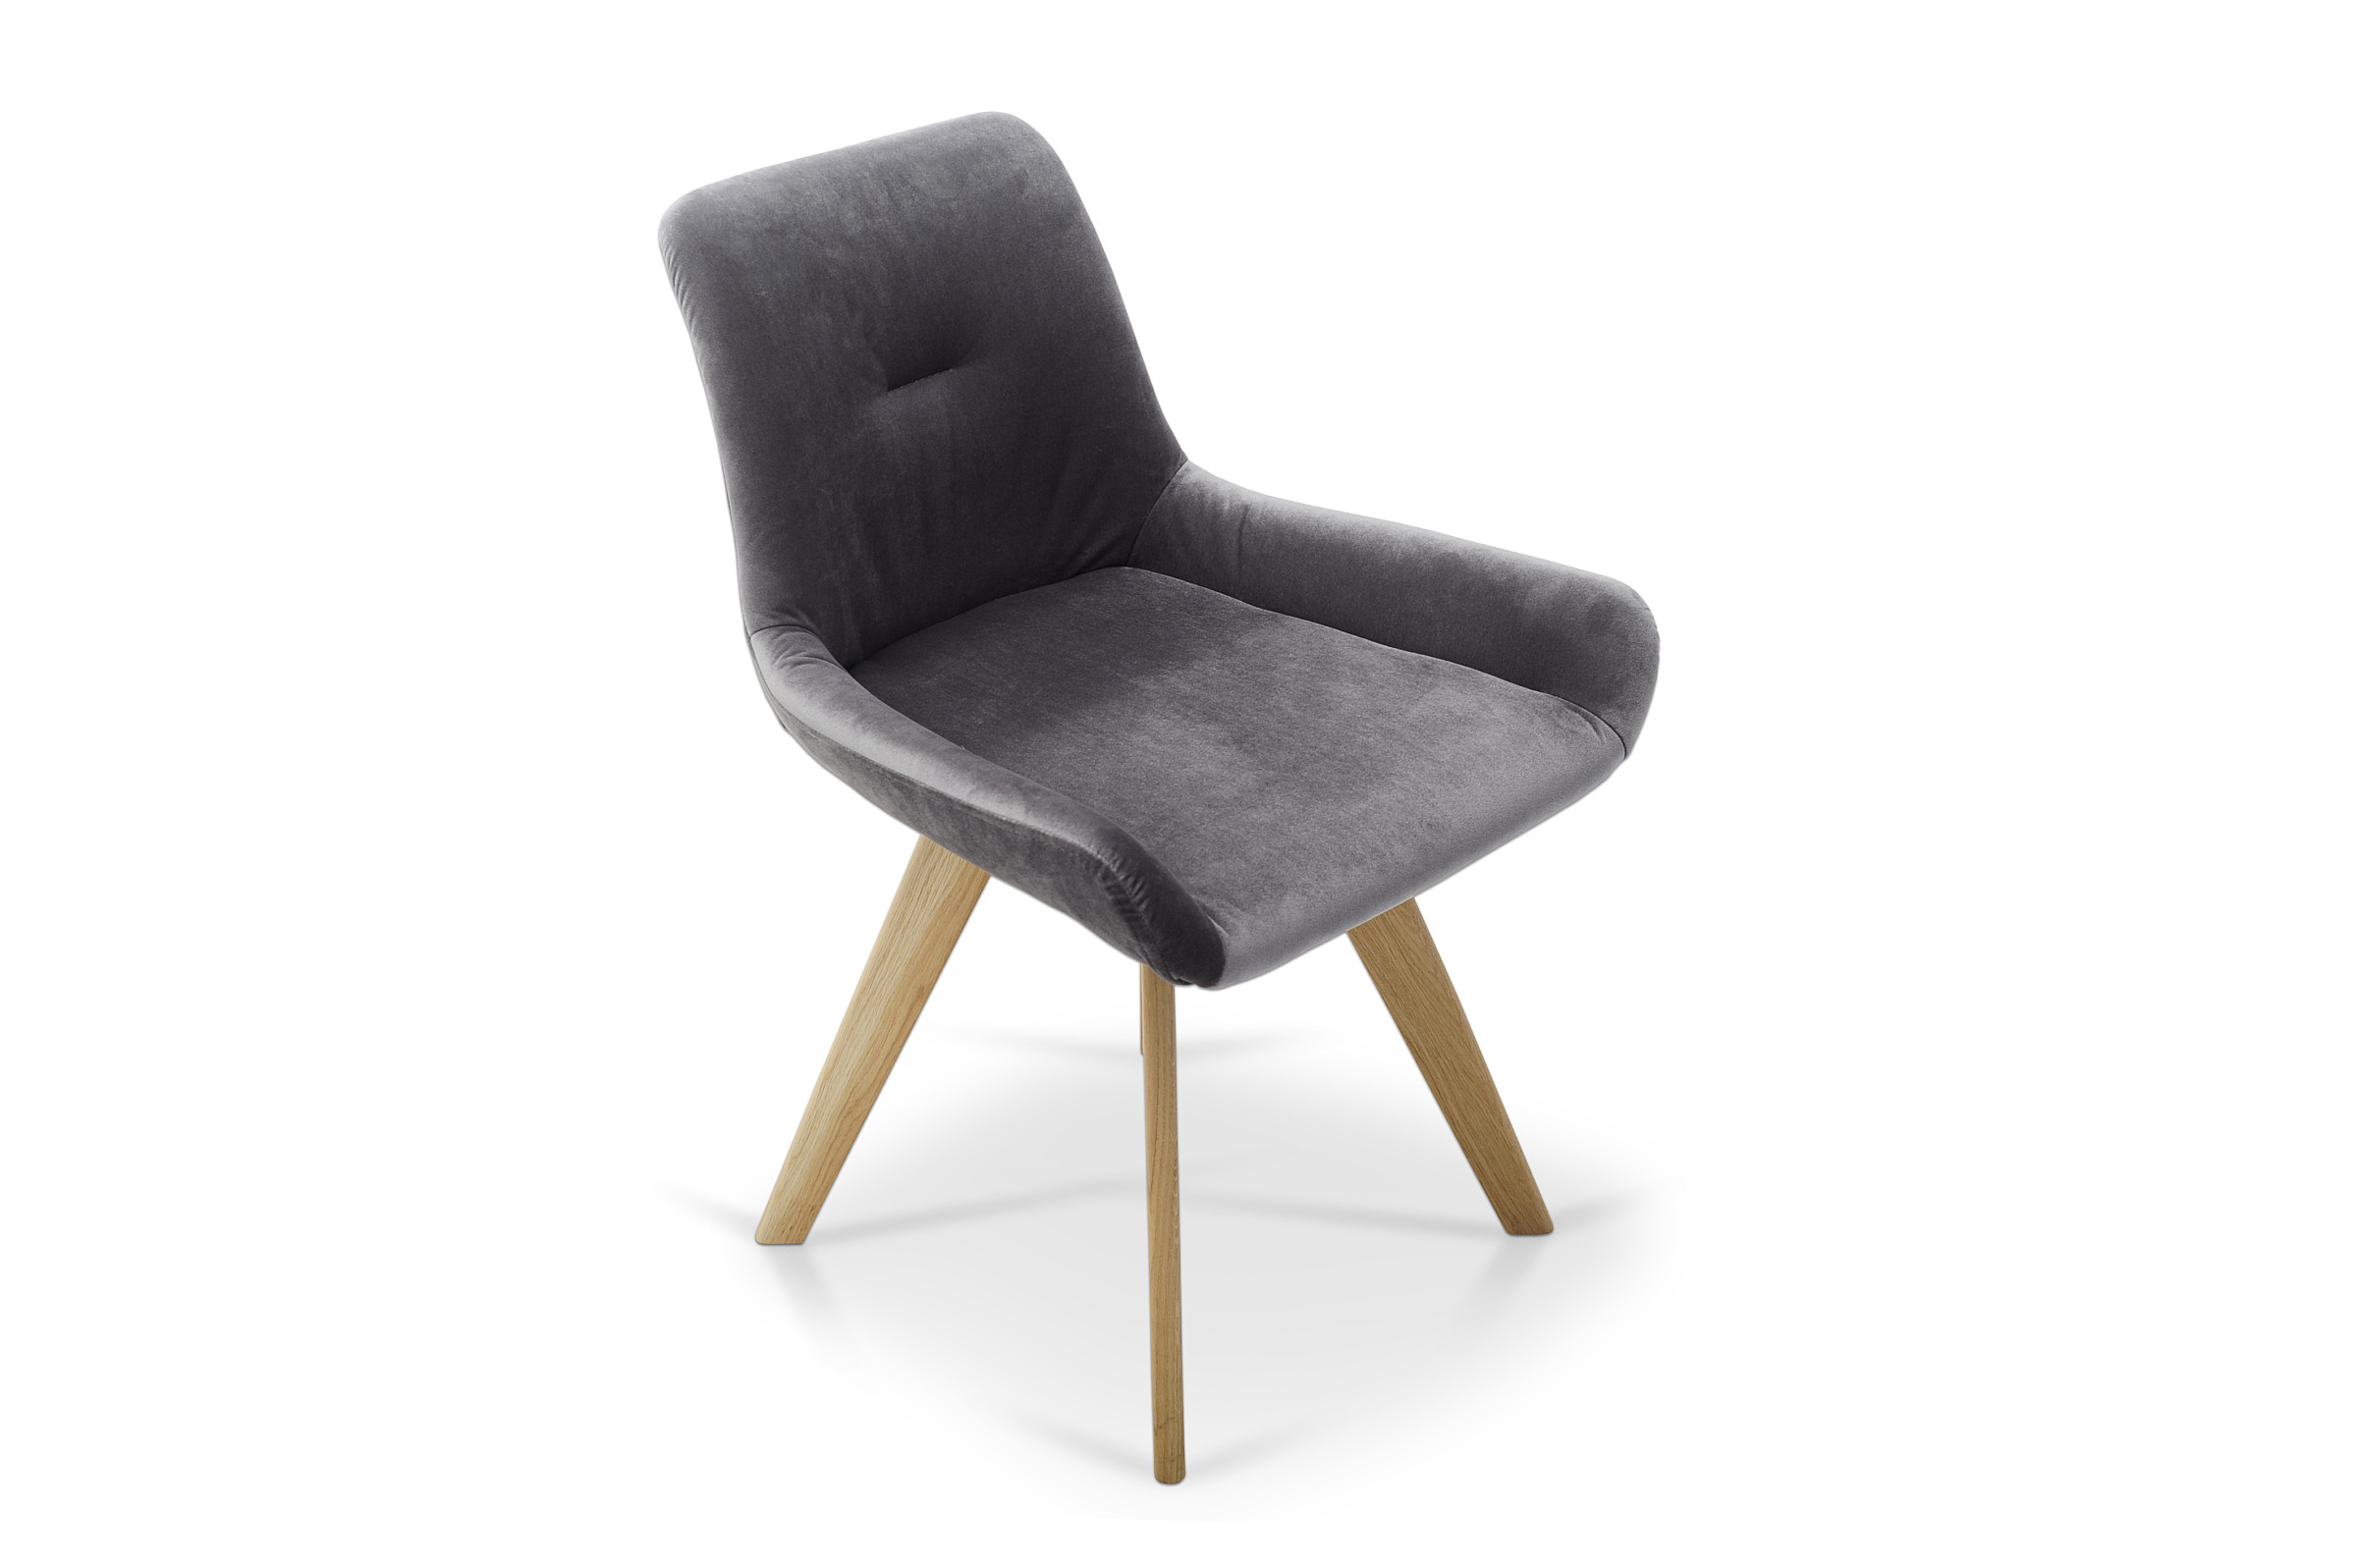 Breiter Sessel aus grauem Veloursstoff. Top-Design 2022 für ein modernes Interieur Ein Hersteller hochwertiger Möbel